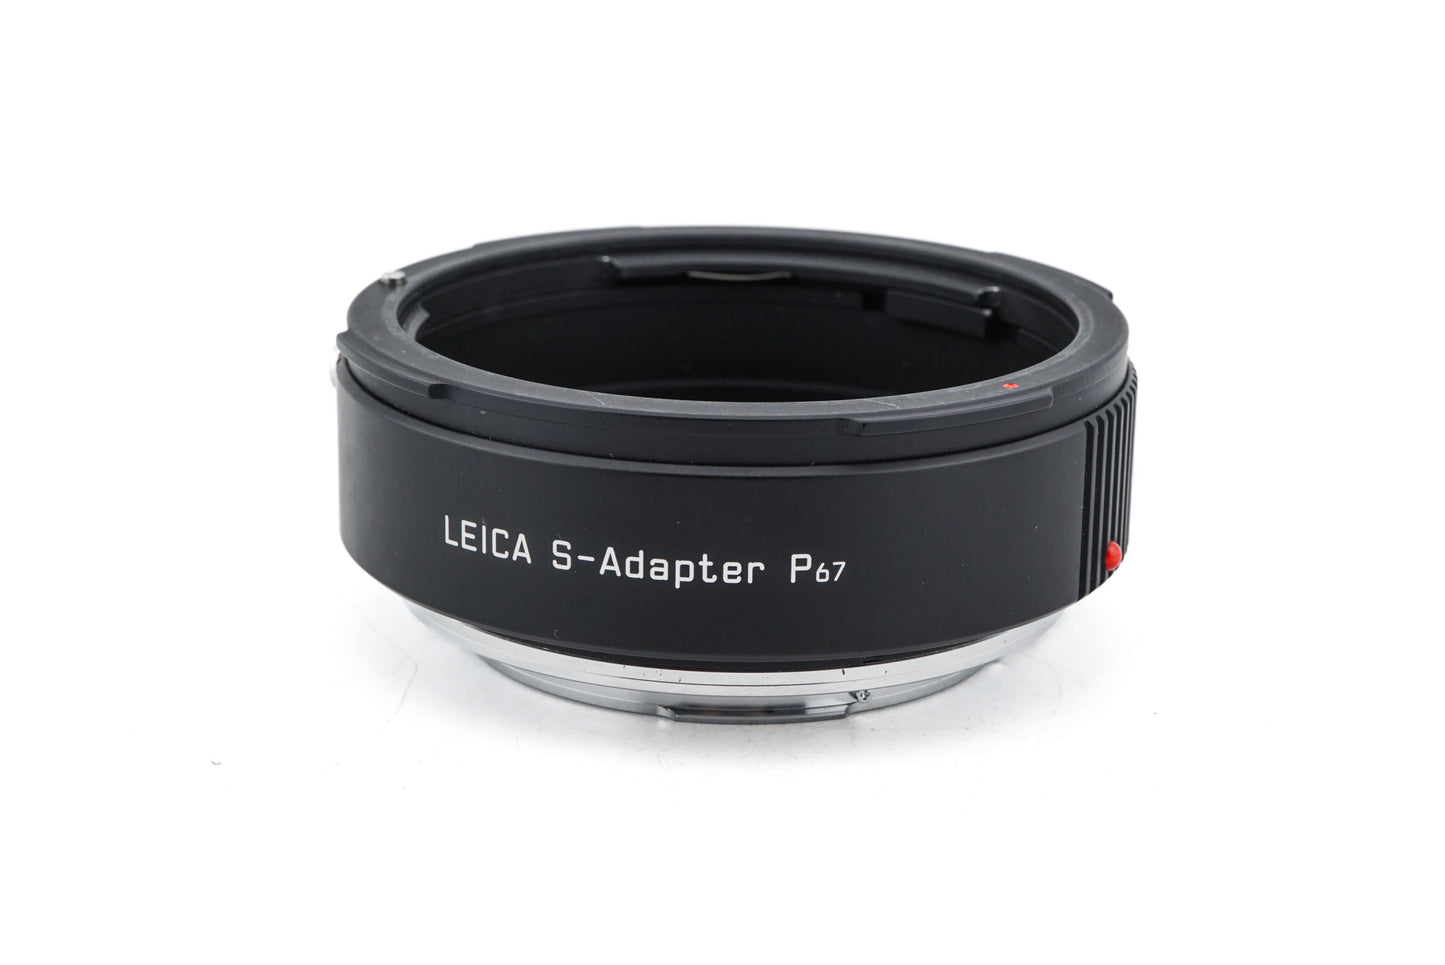 Leica Pentax 67 - Leica S S-Adapter P67 Adapter (16026)